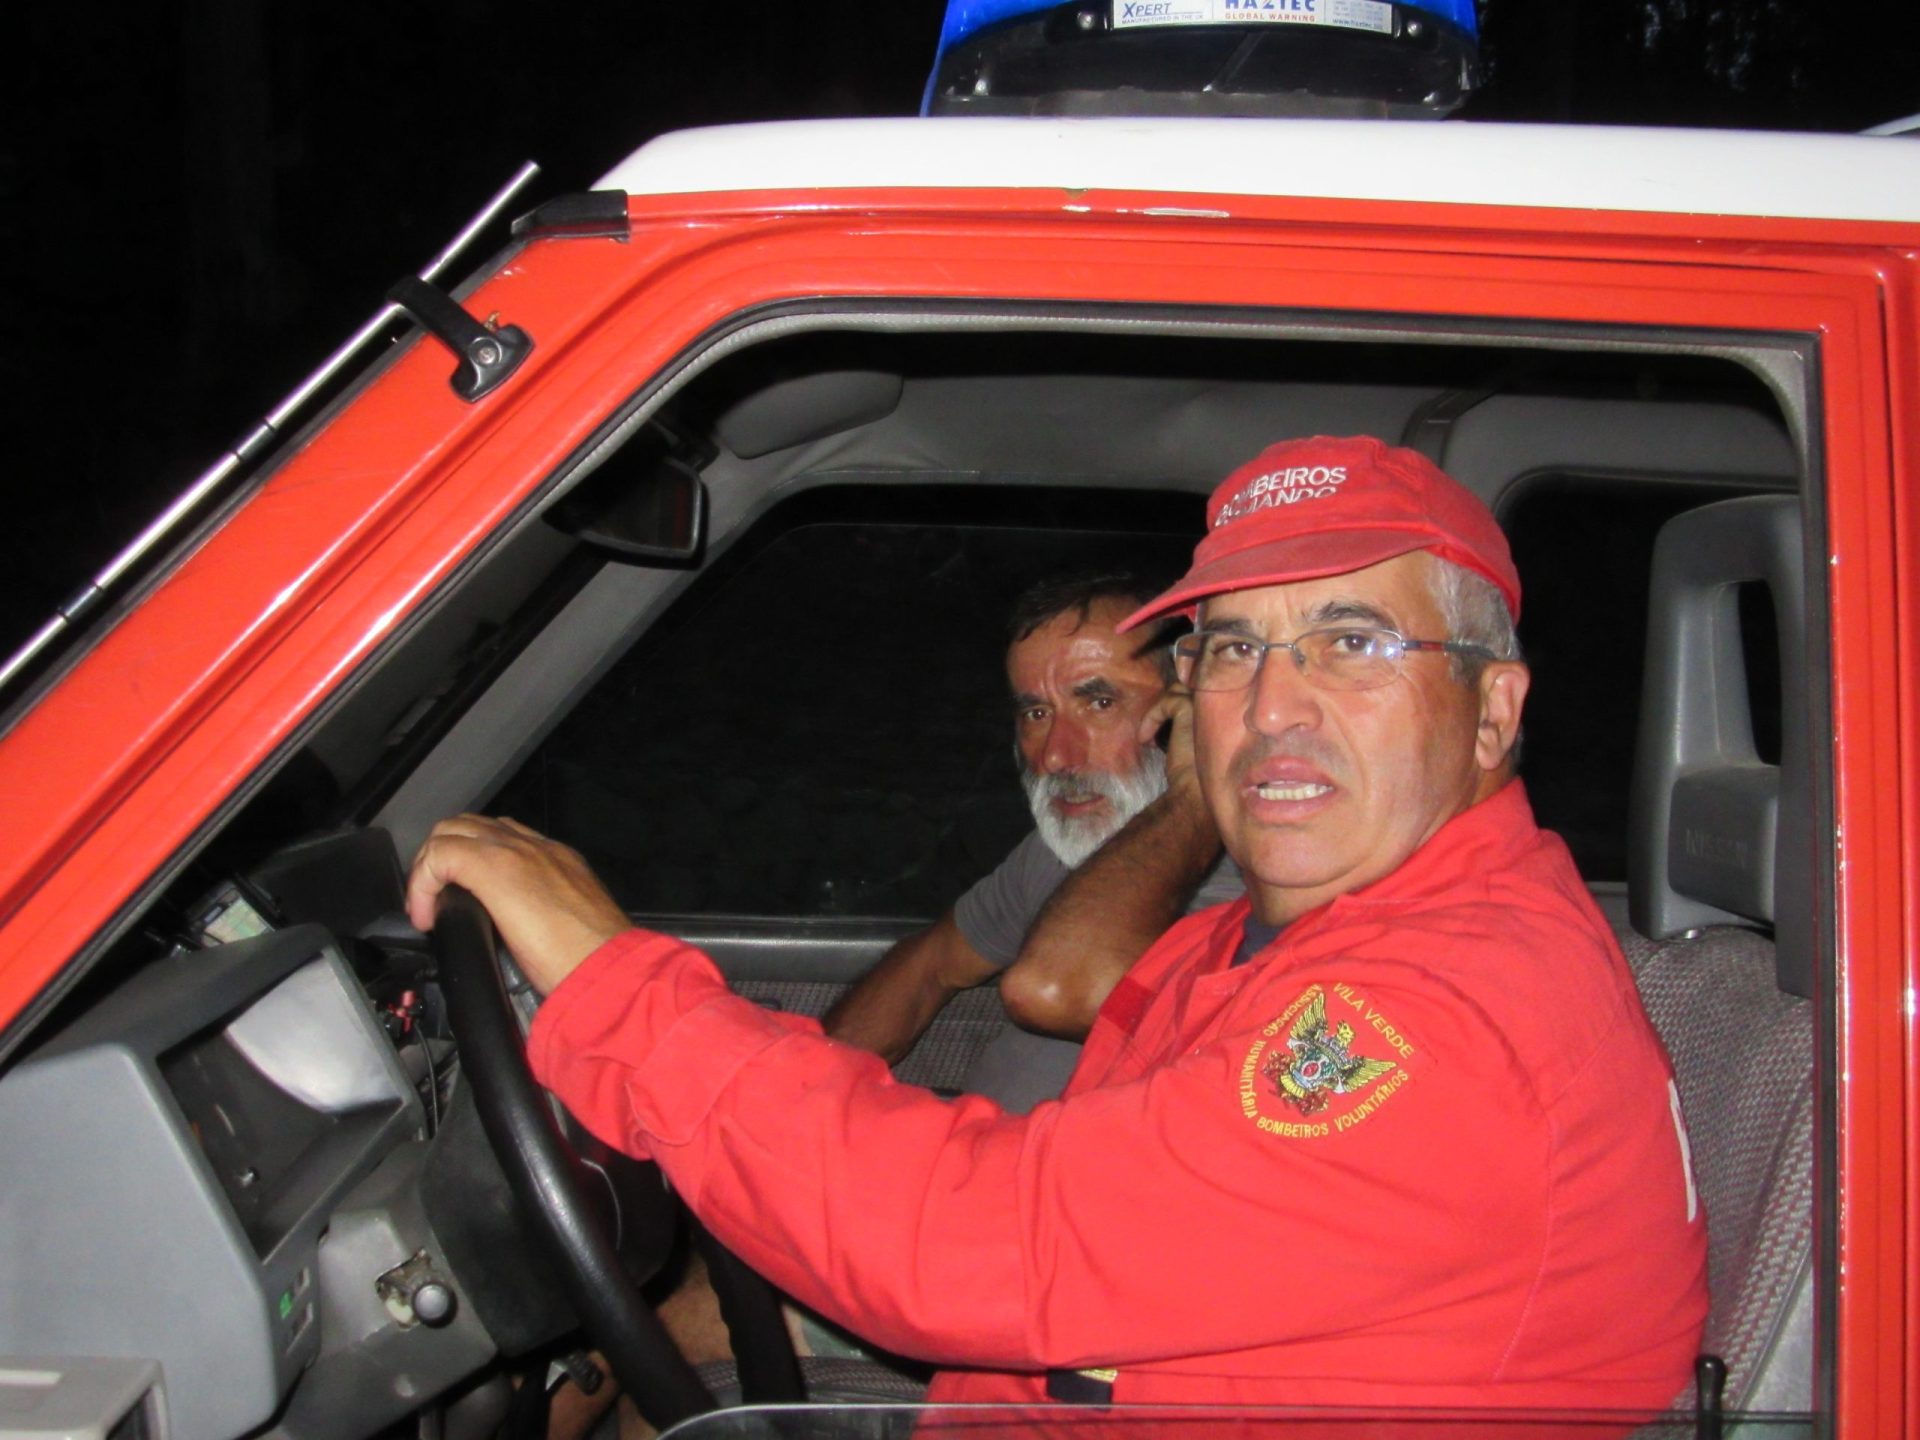 Proposta de novo “comandante” para os Voluntários de Braga considerada ilegal